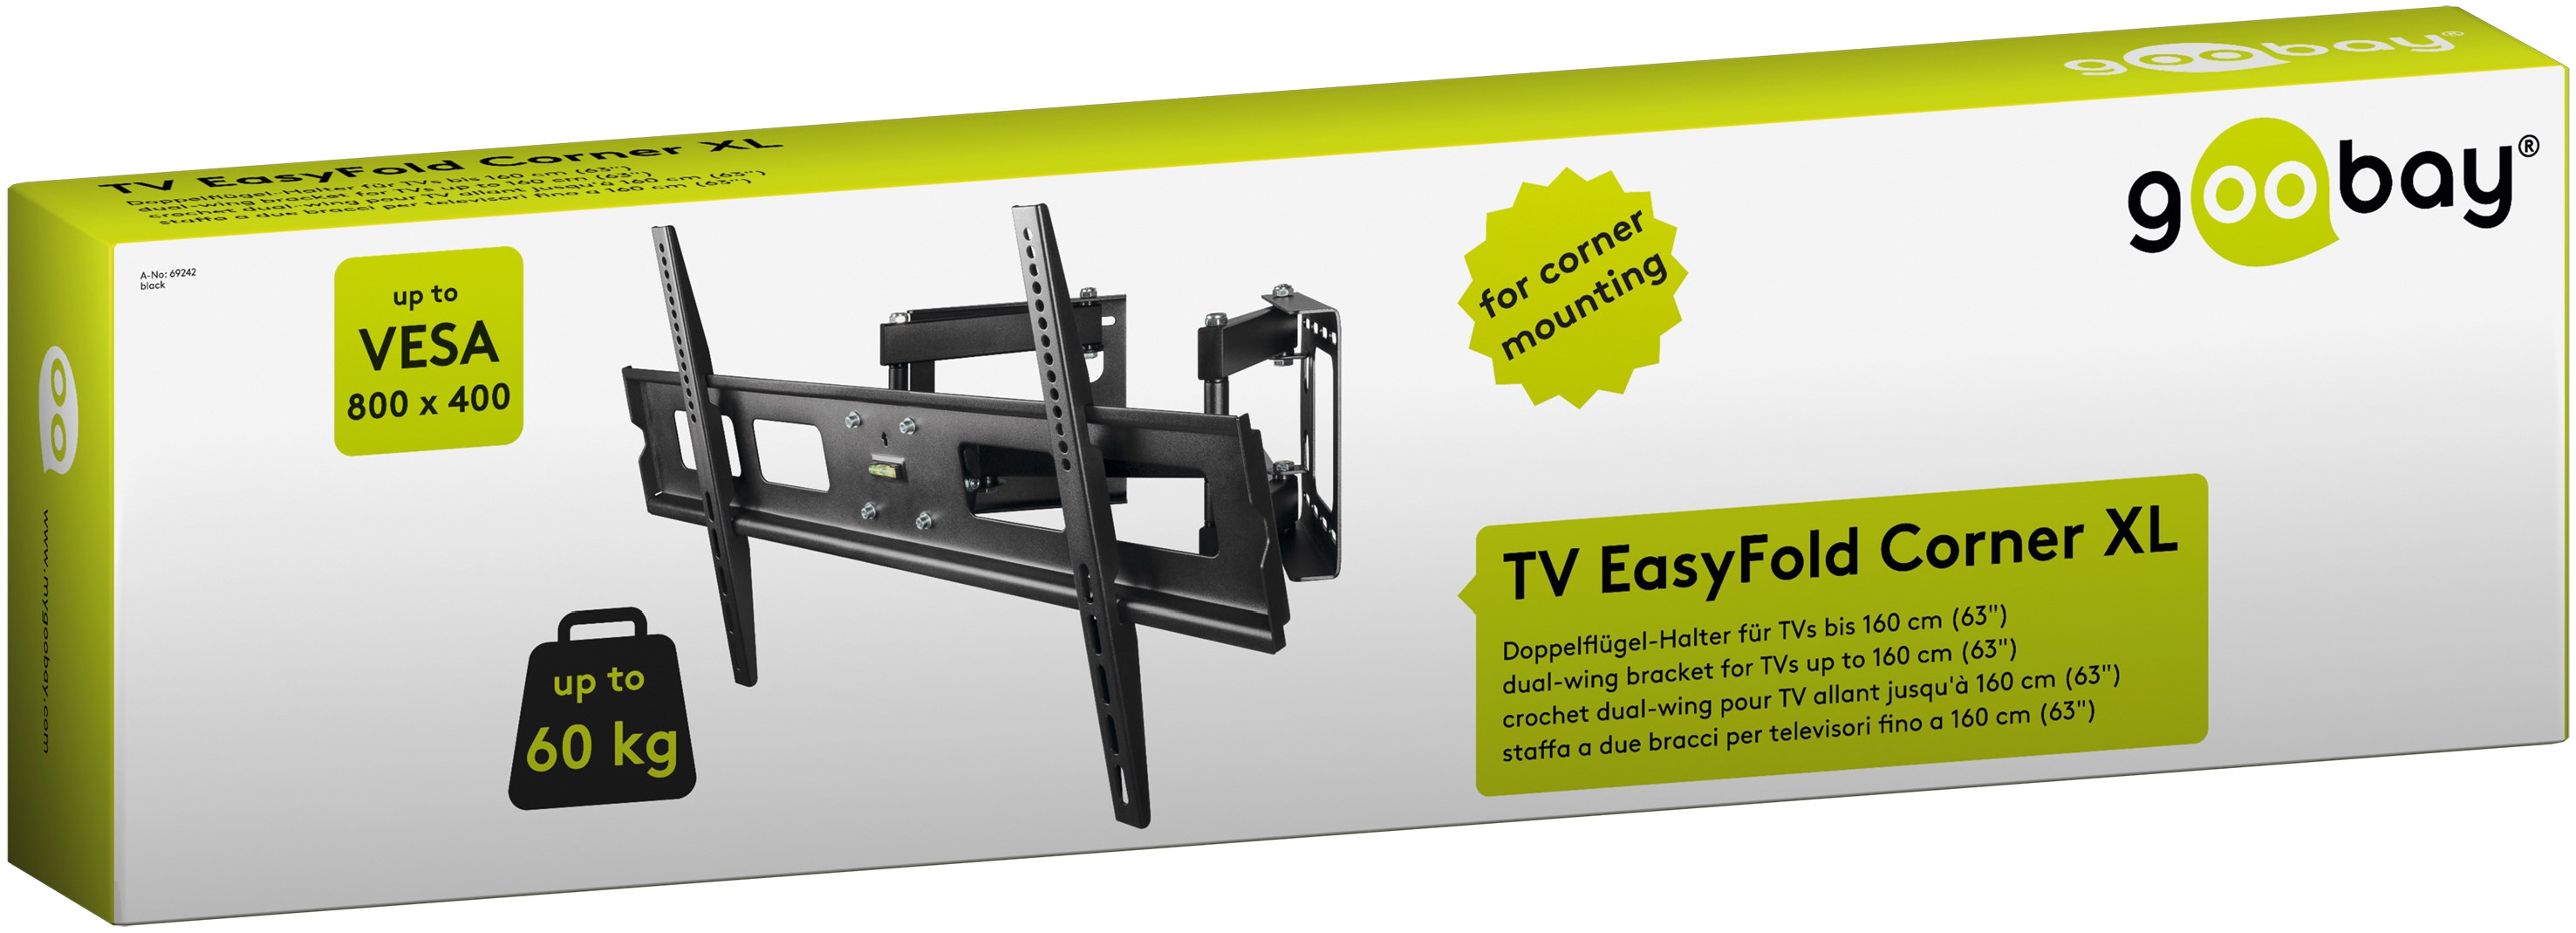 Goobay 69242 TV EasyFold Corner XL  Doppelflügel-Wandhalter für TVs bis 160 cm